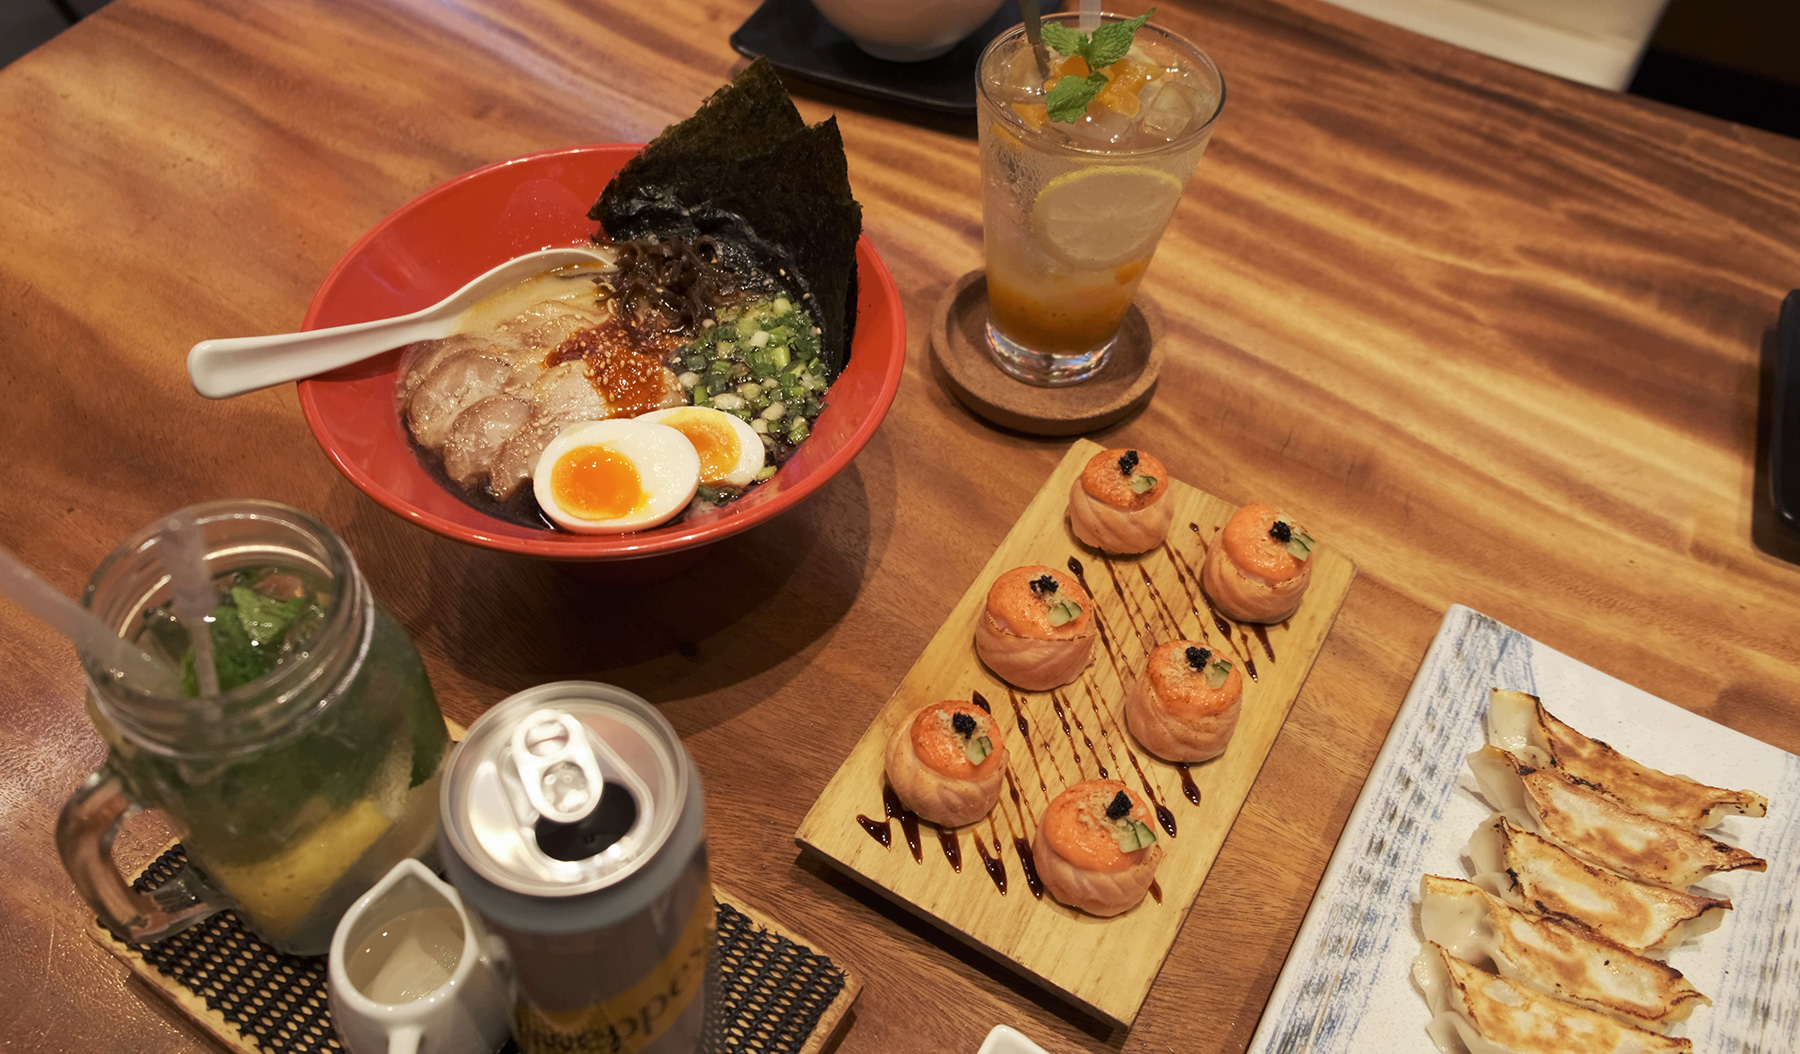 Try out Japan’s classic dishes like Tonkotsu Ramen, Salmon Roll and Gyoza at Ippudo Ramen.